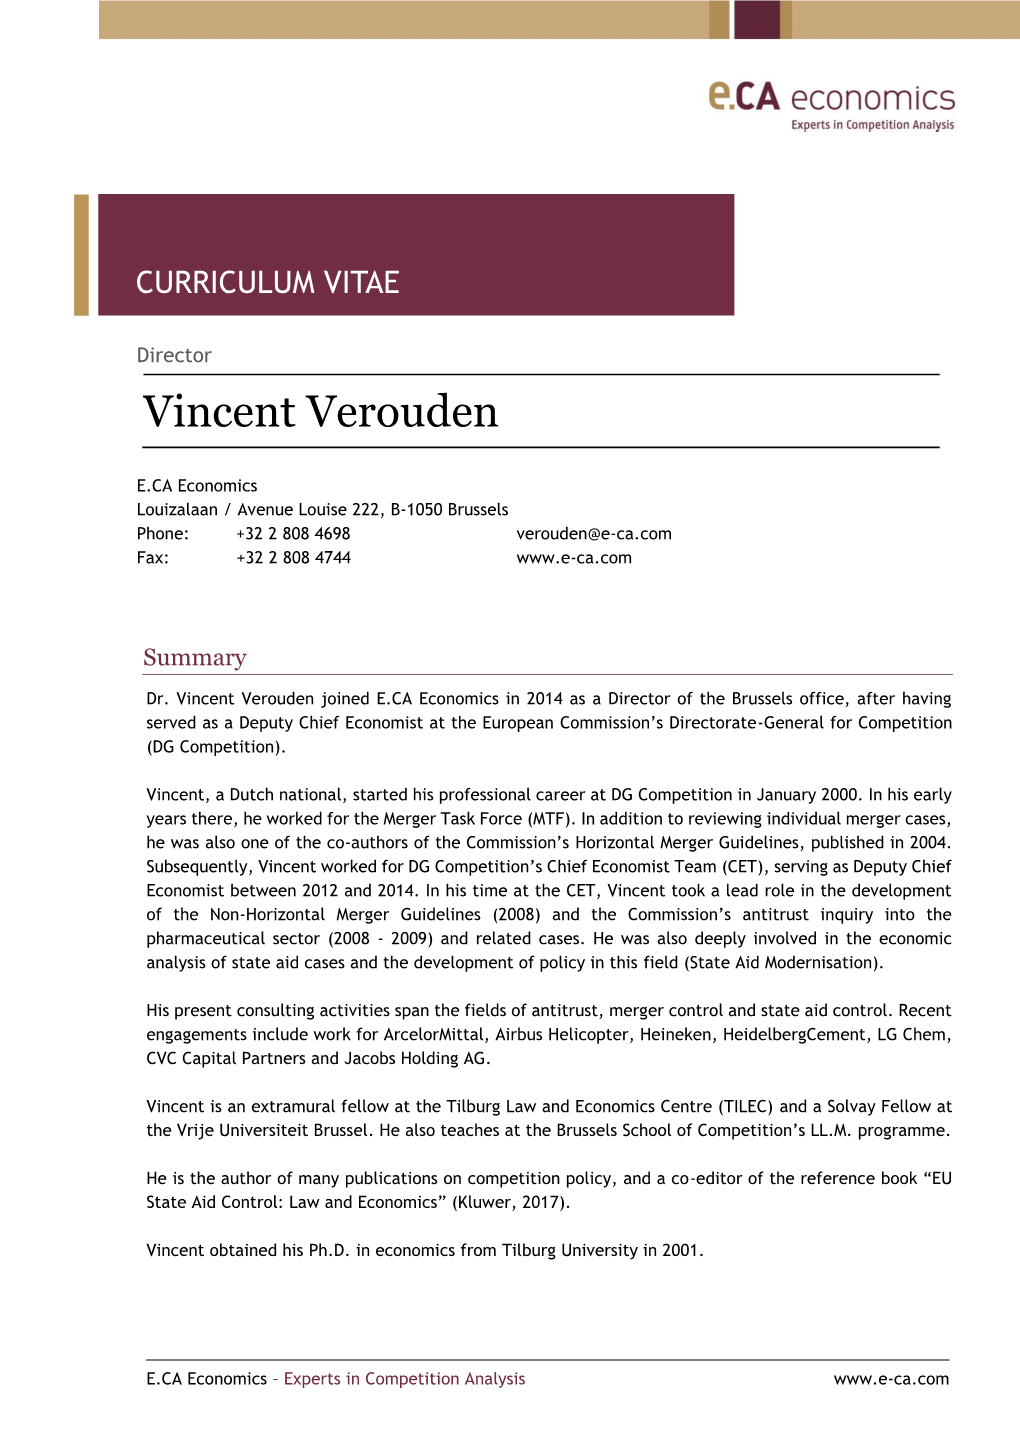 Vincent Verouden